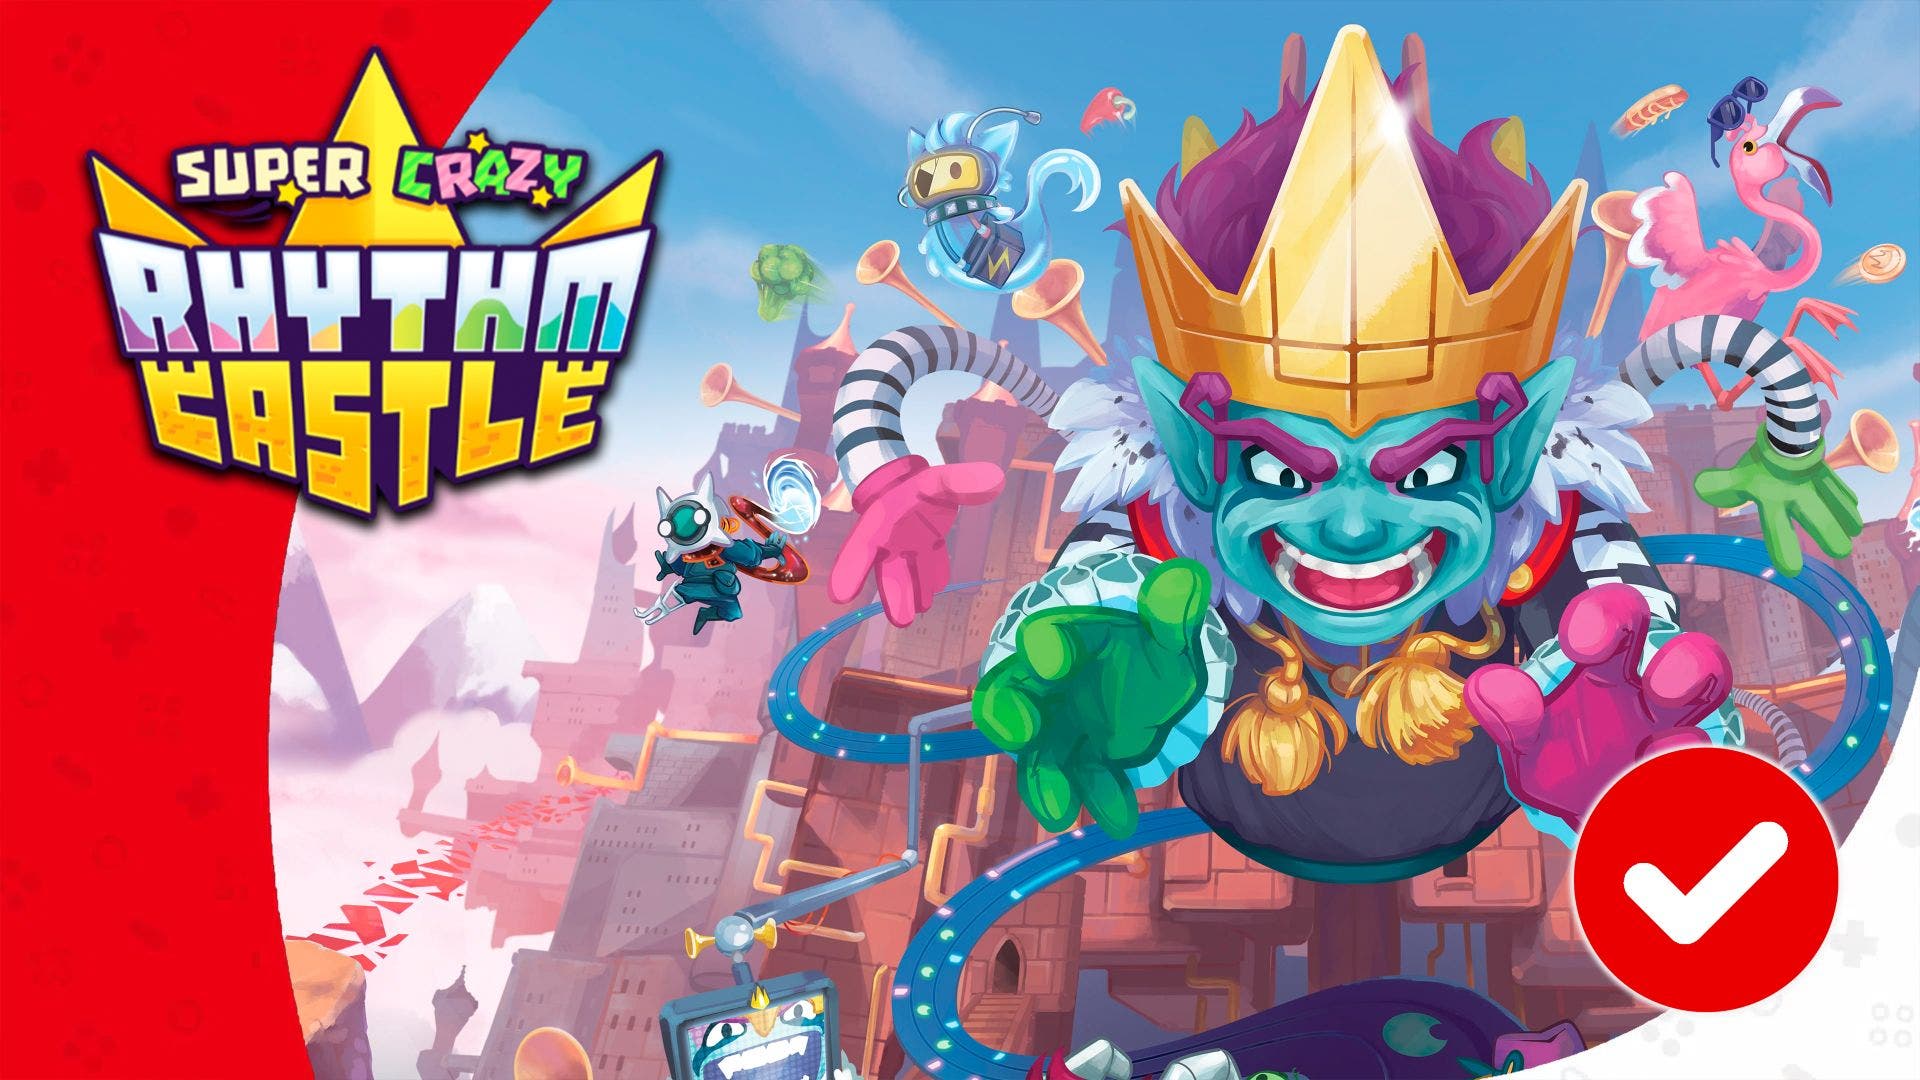 [Análisis] Super Crazy Rhythm Castle para Nintendo Switch